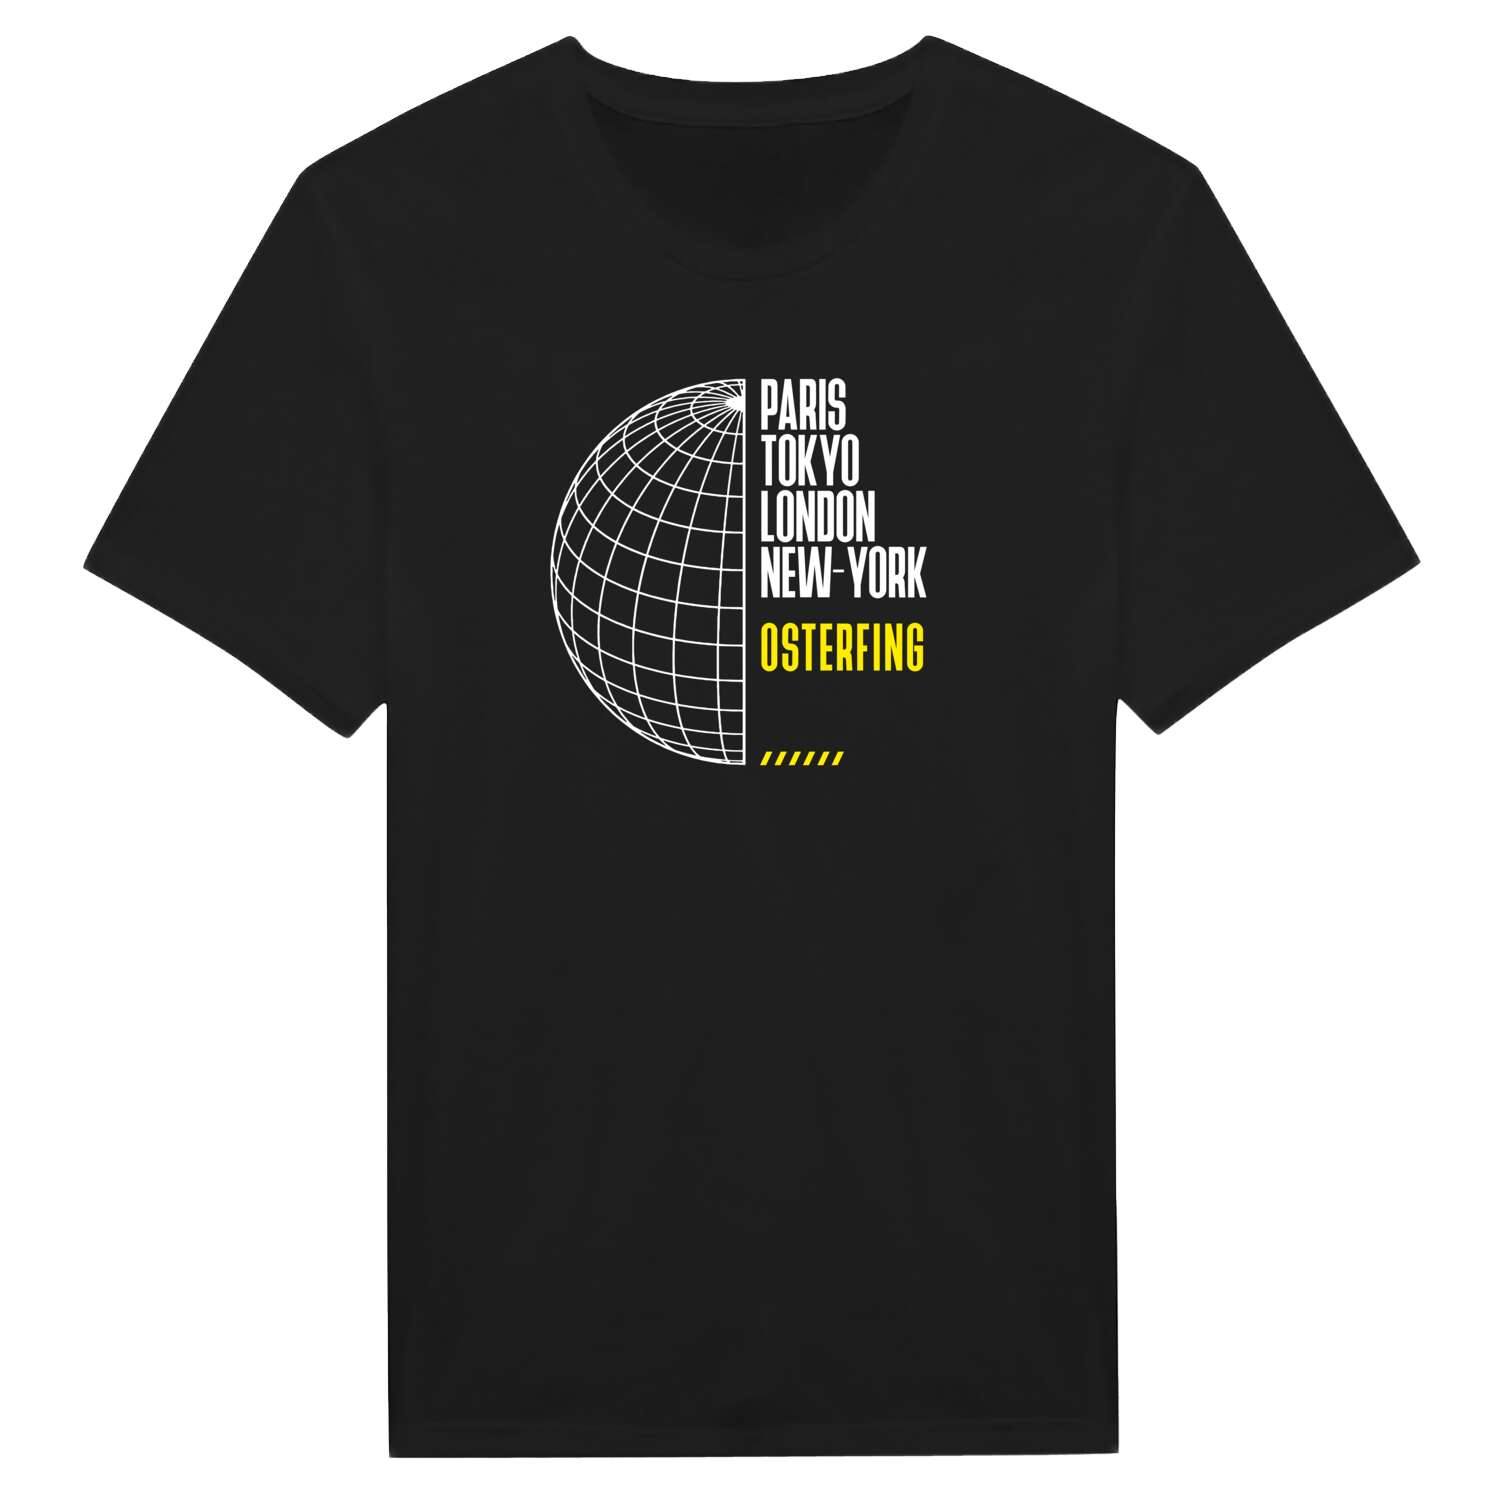 Osterfing T-Shirt »Paris Tokyo London«